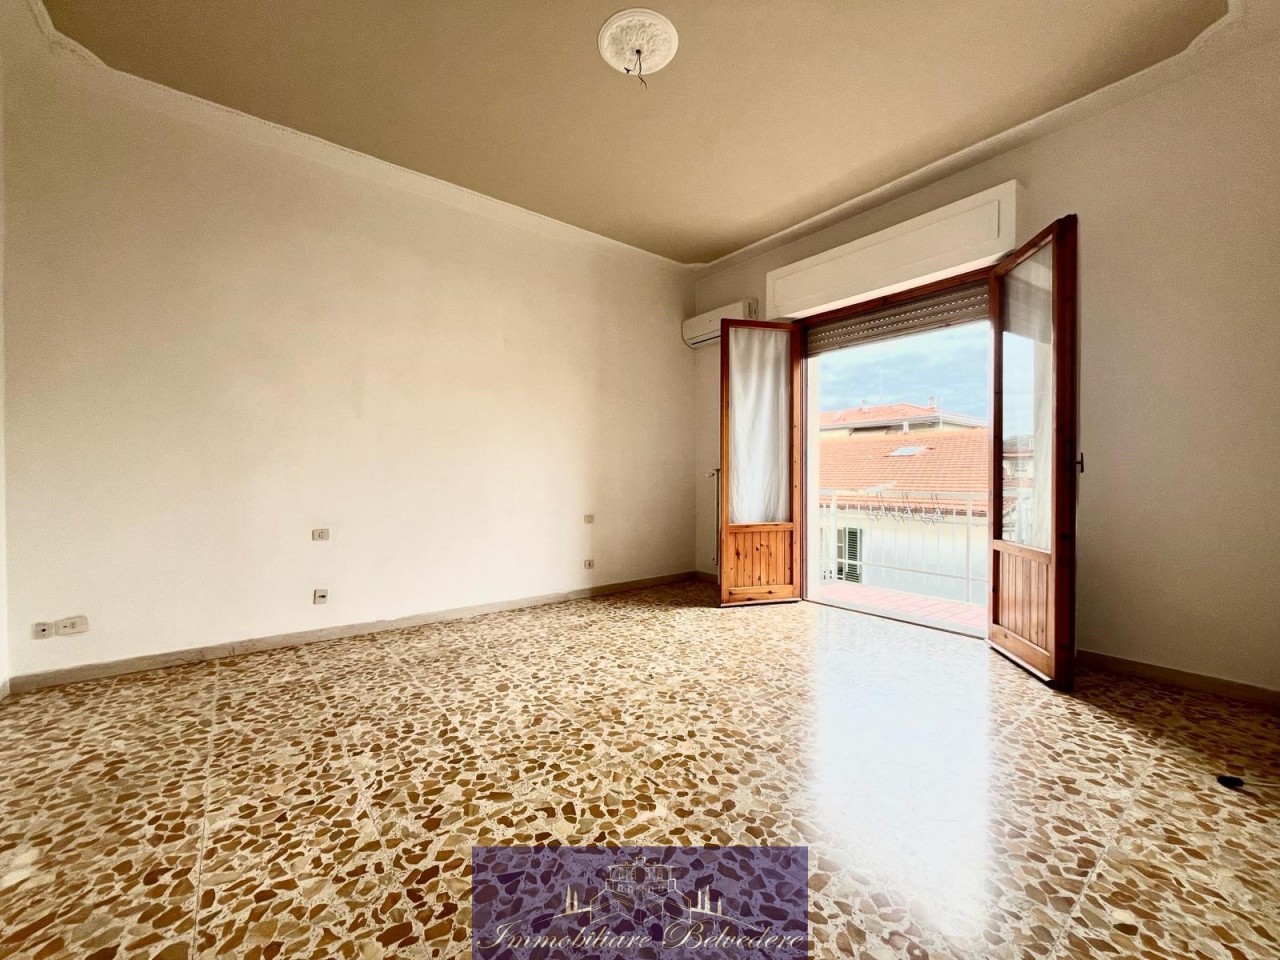 Appartamento in vendita a Impruneta, 4 locali, prezzo € 255.000 | PortaleAgenzieImmobiliari.it